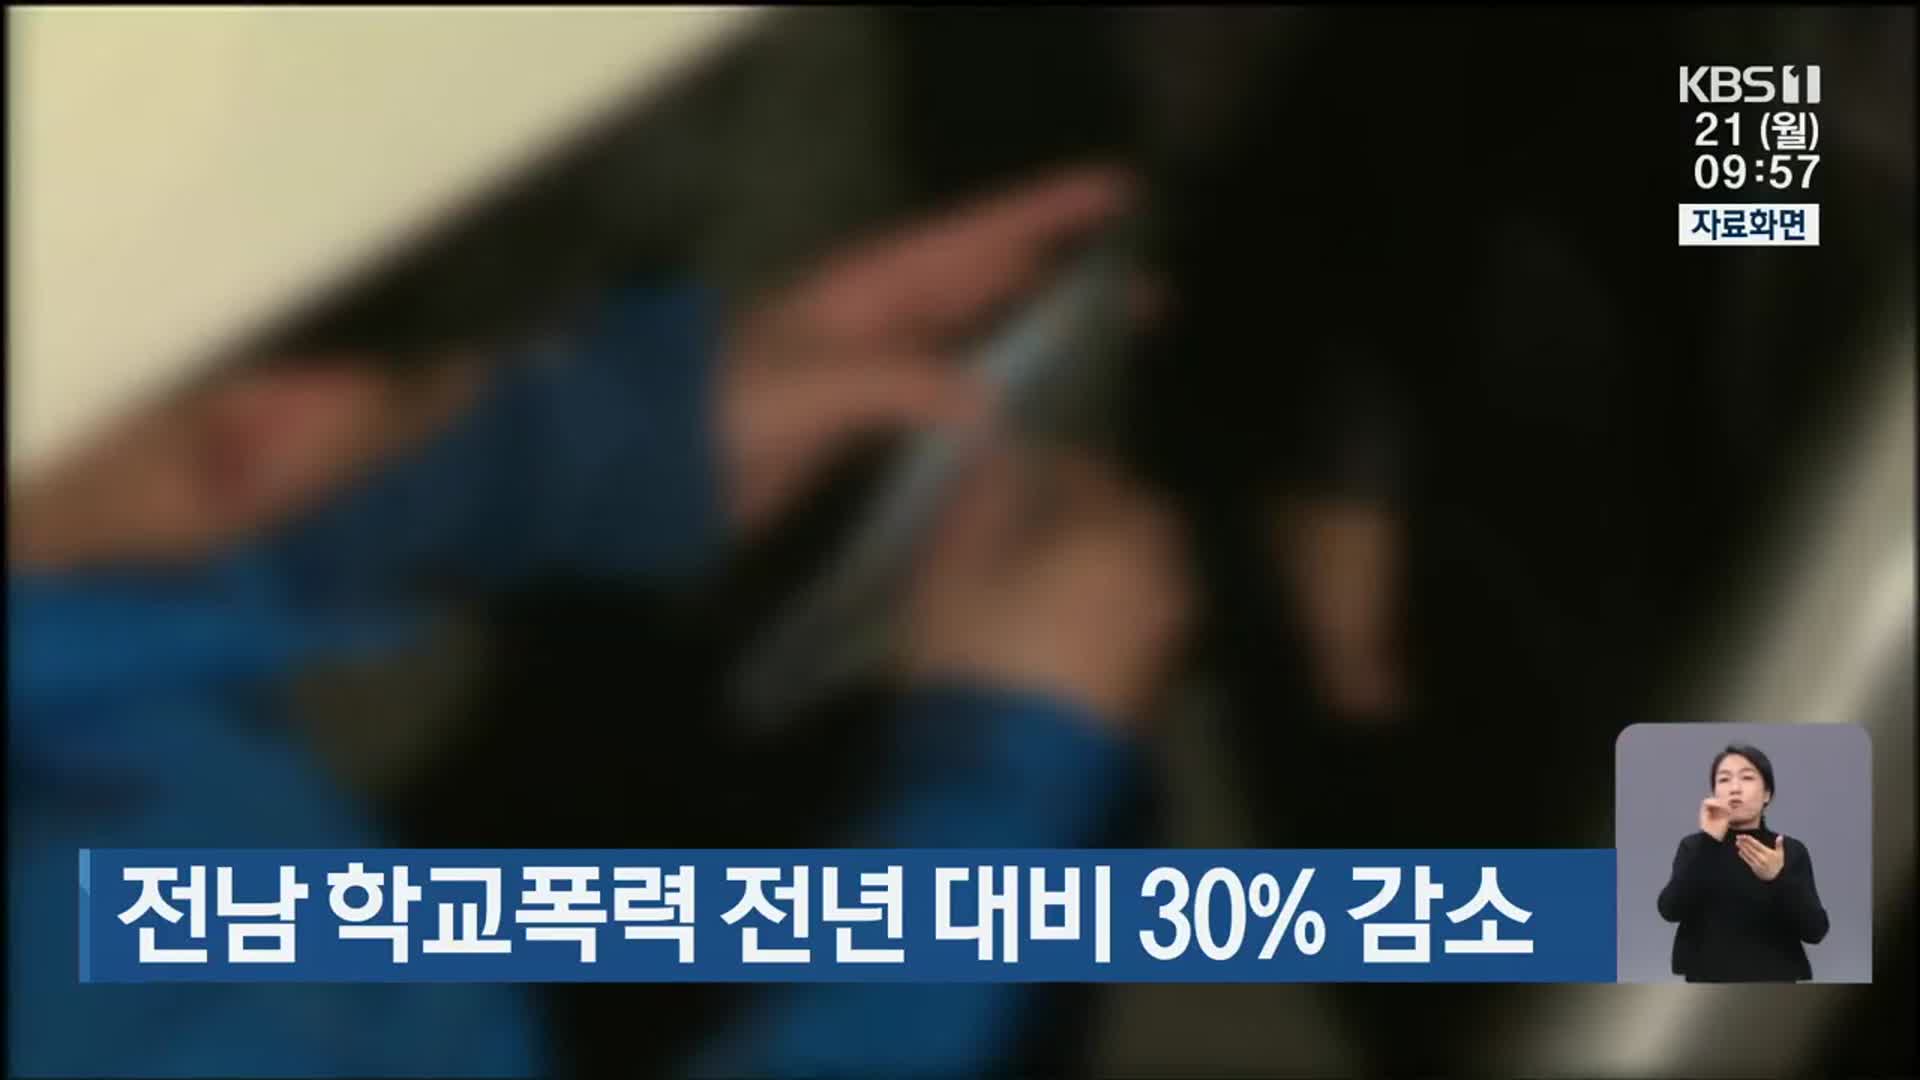 전남 학교폭력 전년 대비 30% 감소